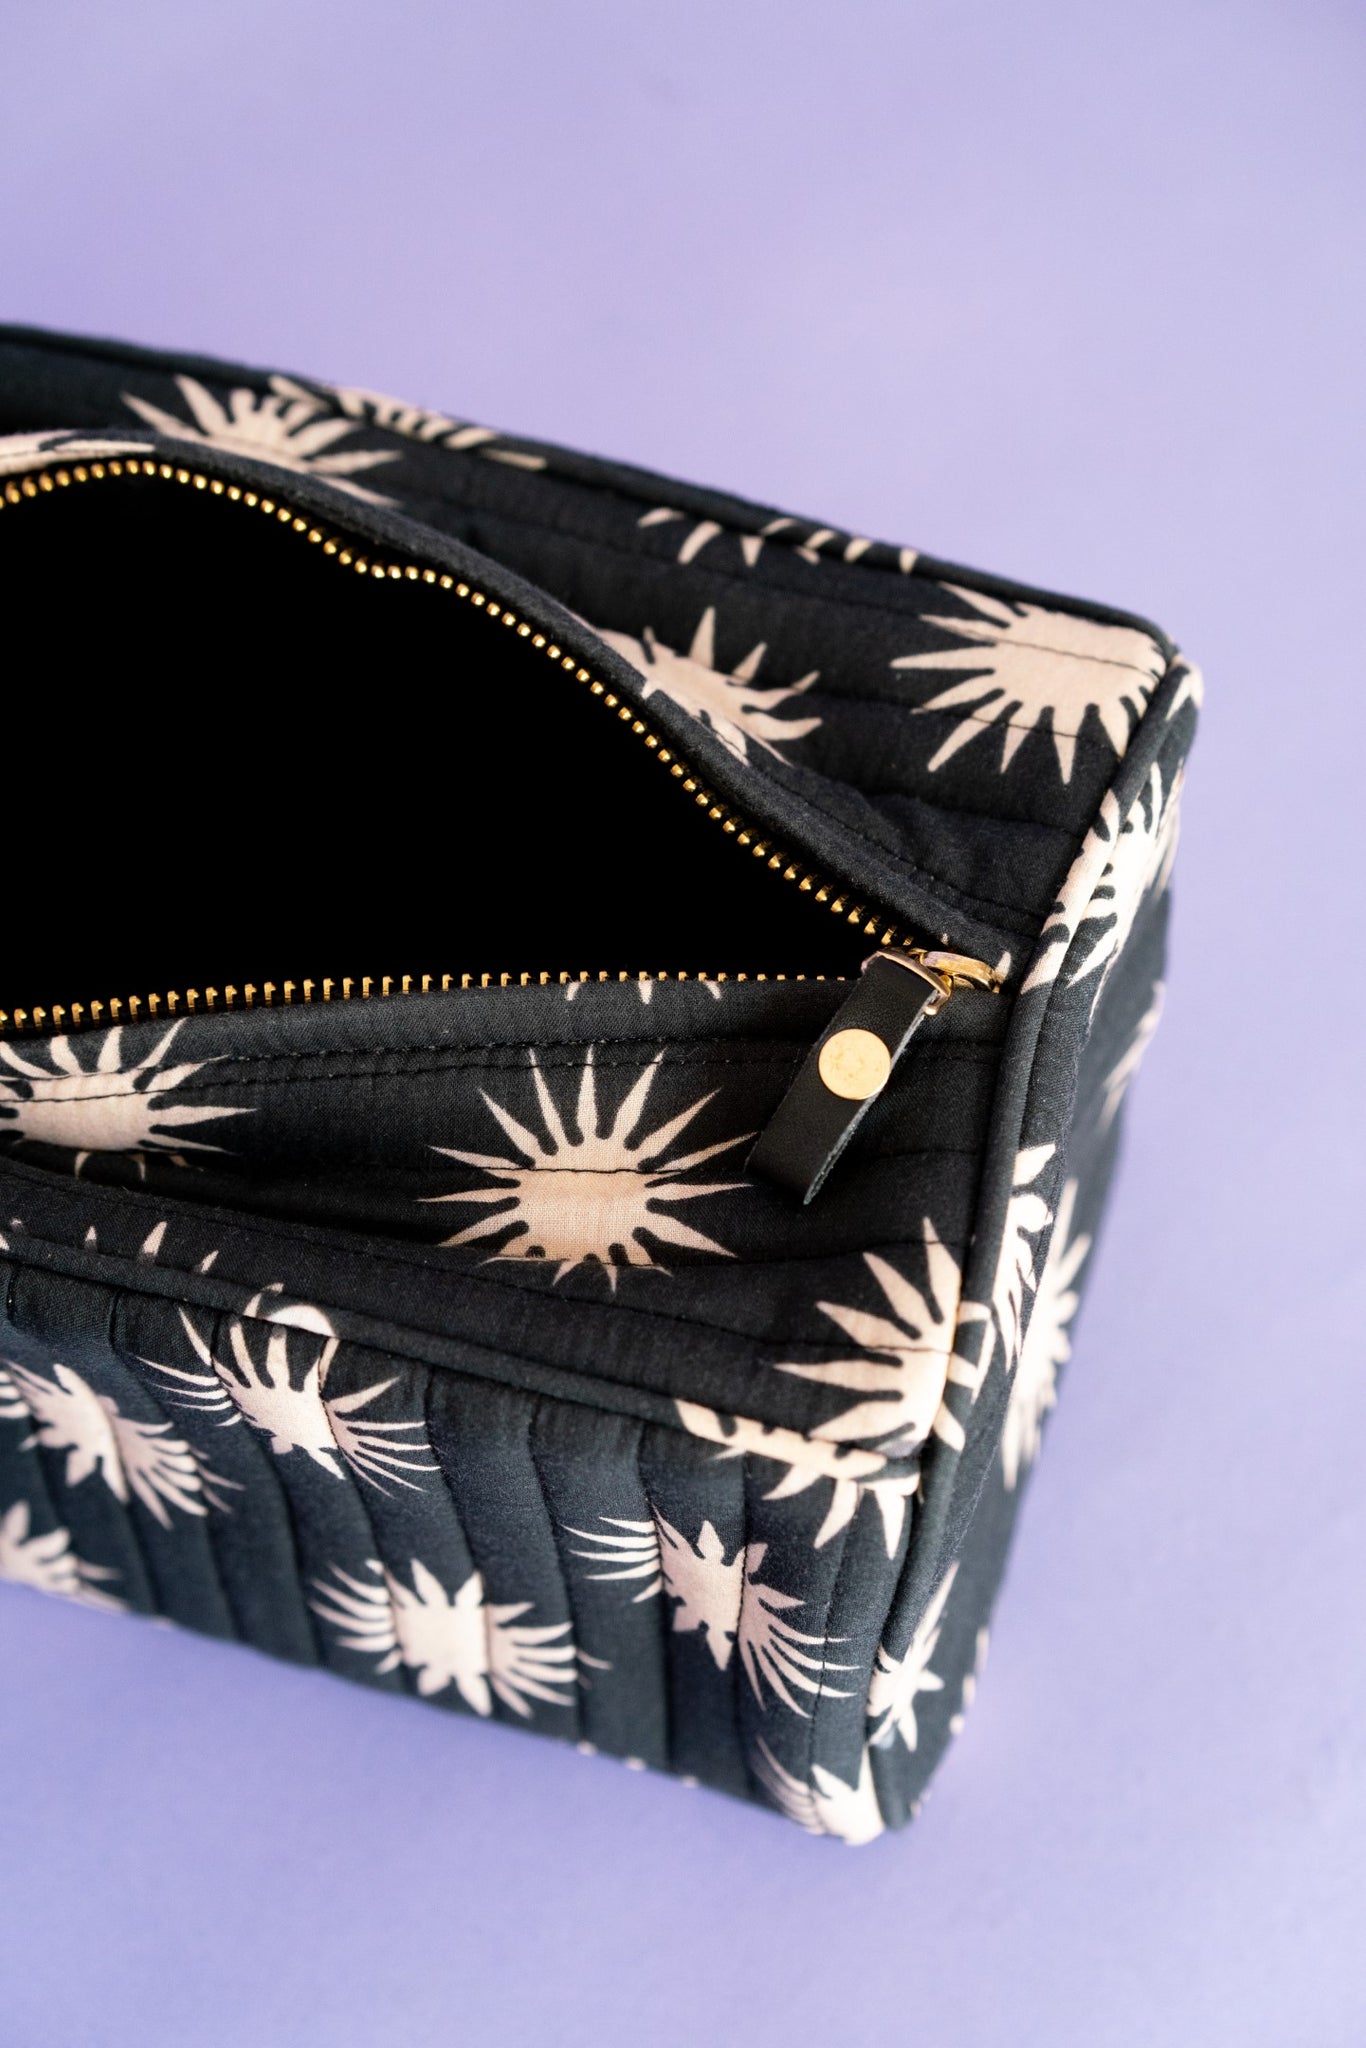 Cosmetic Bag in Black + Beige Stars